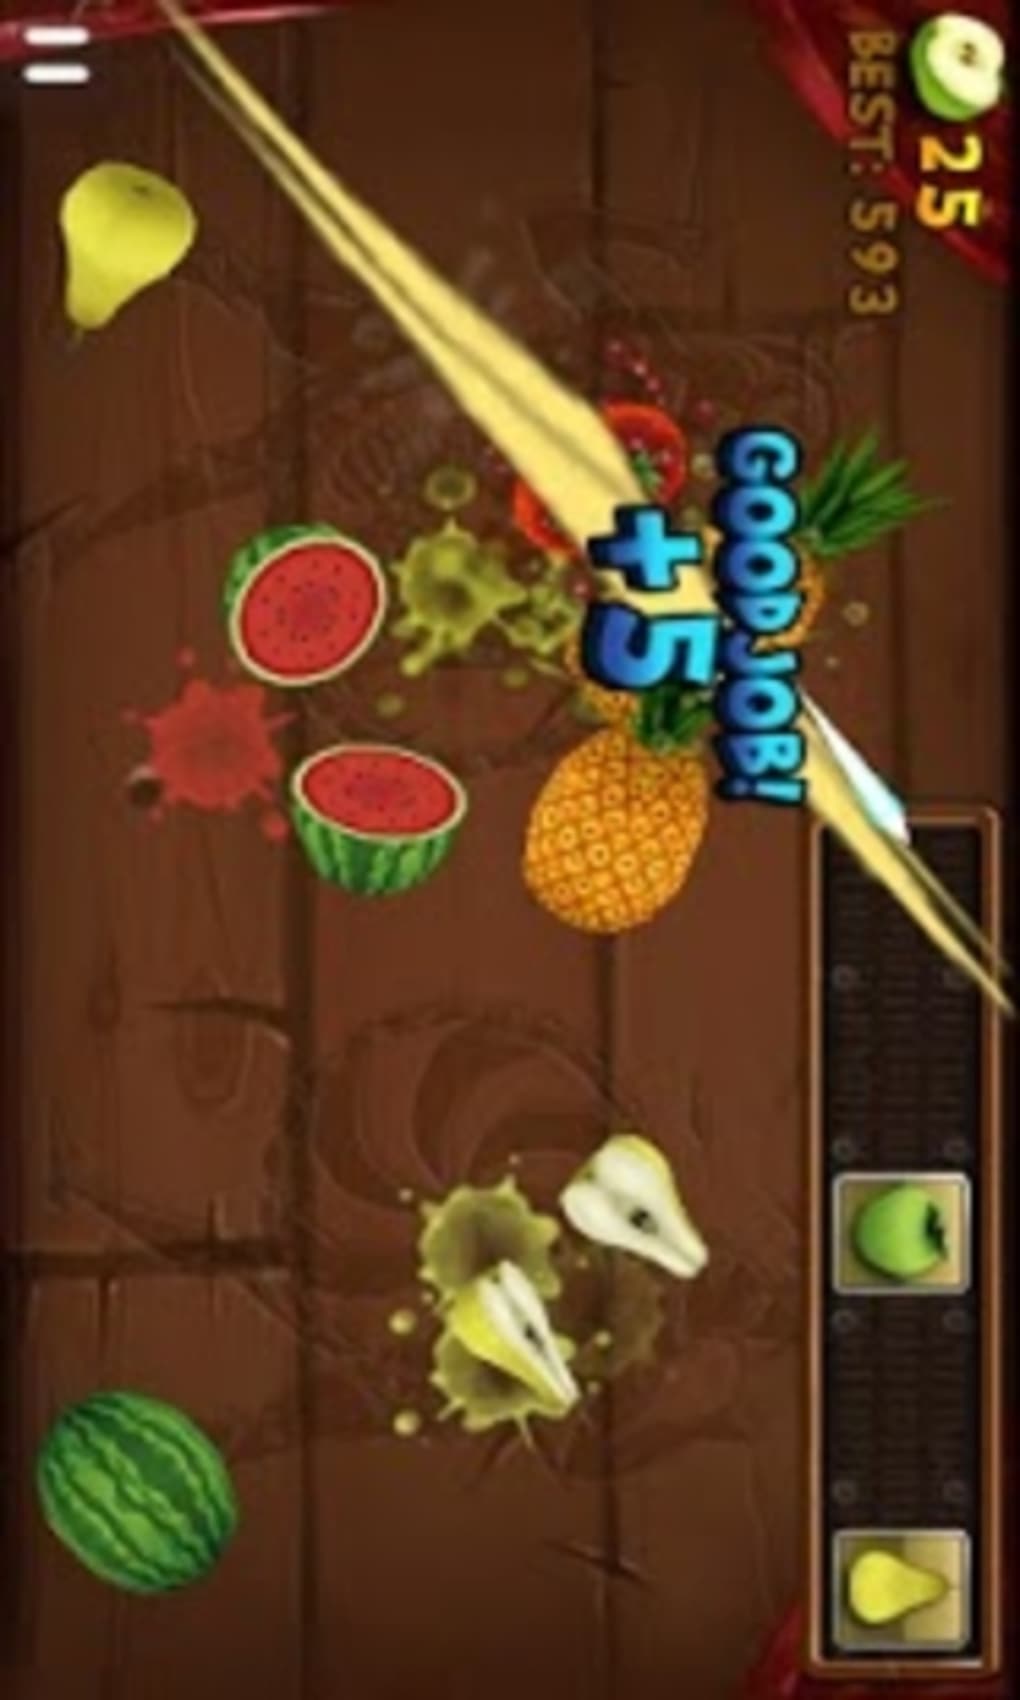 Download Cash Rewards Ninja Fruit Slice Master Game Free for